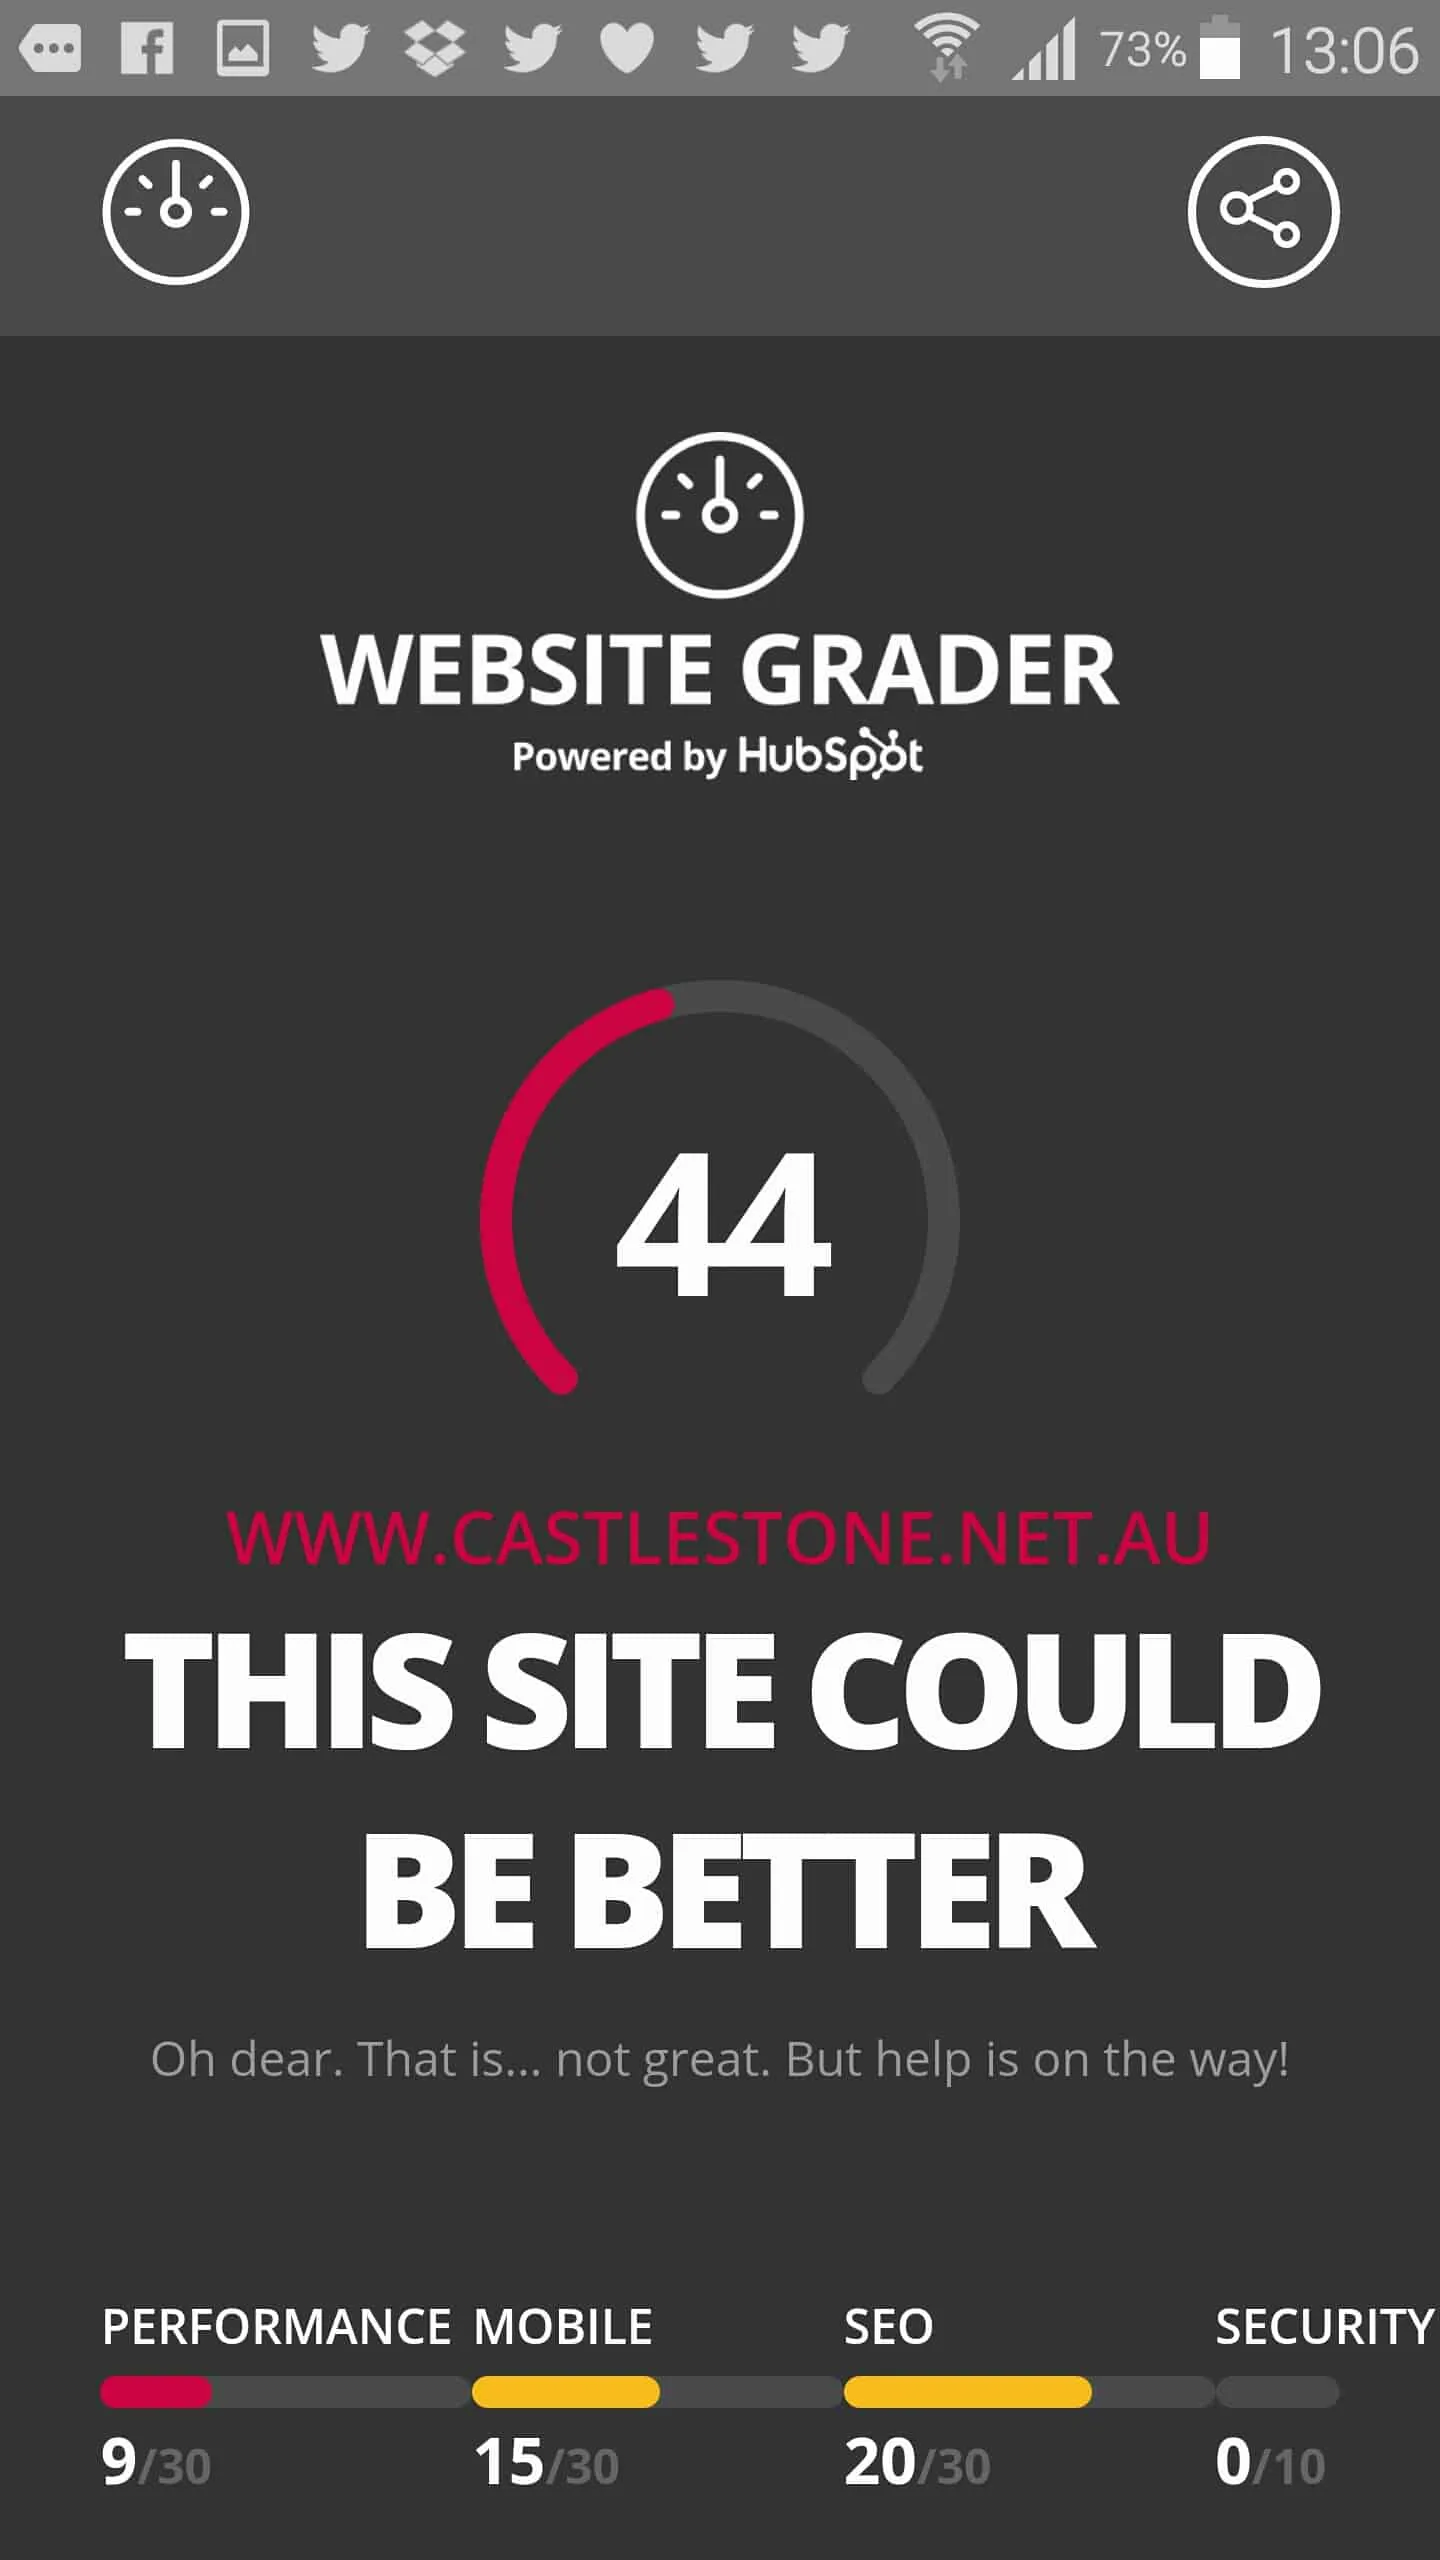 hubspot website grader clarence ling testing castlestone website